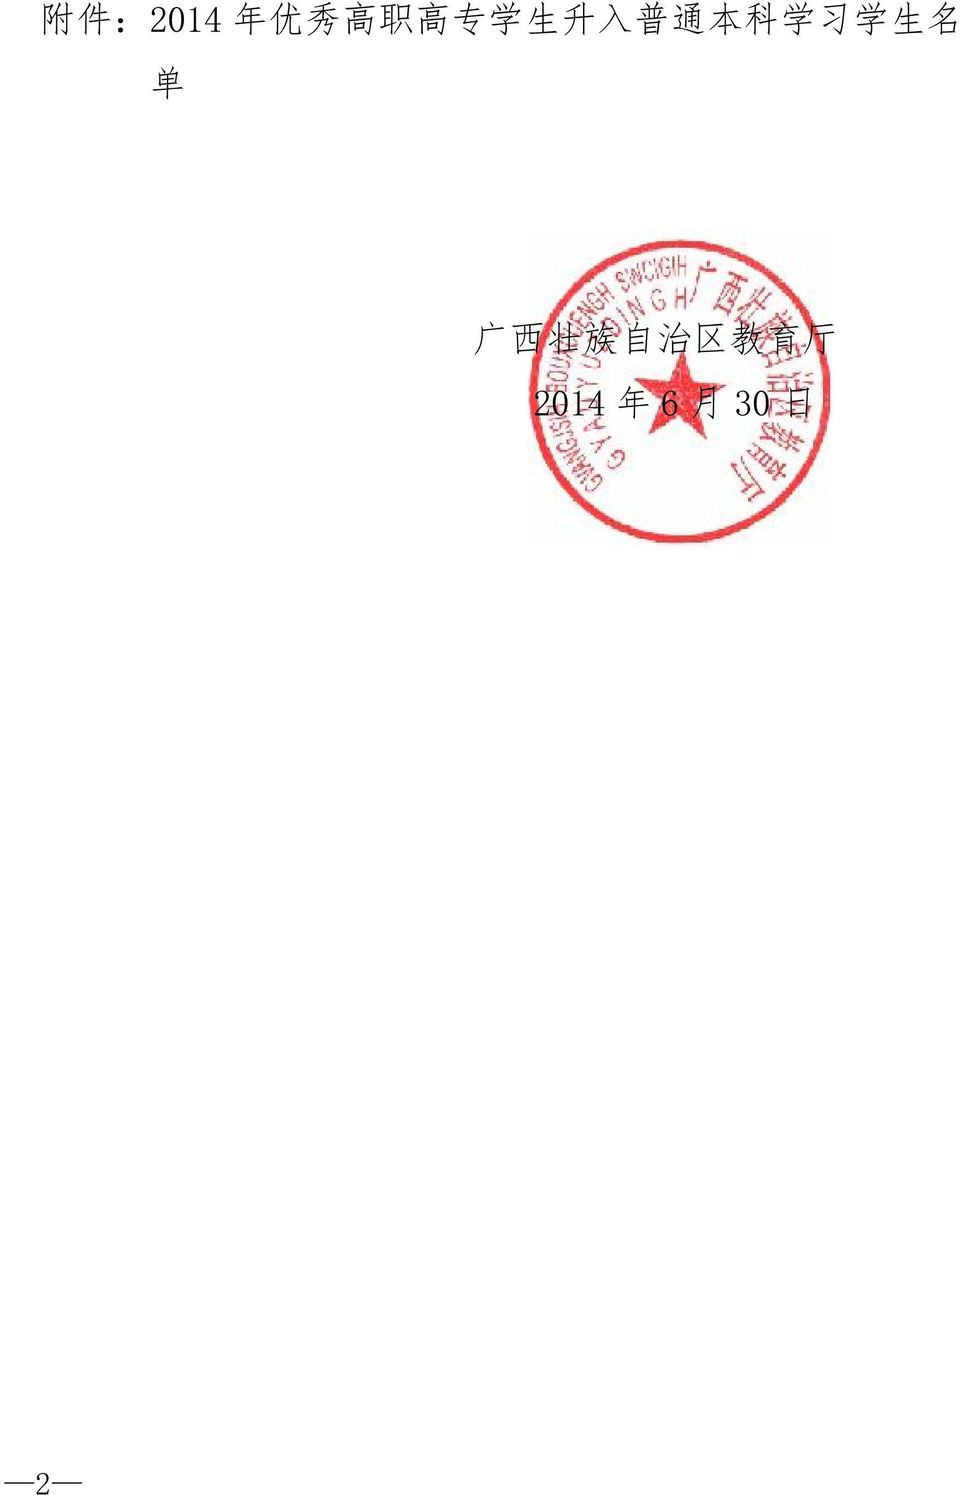 学 生 名 单 广 西 壮 族 自 治 区